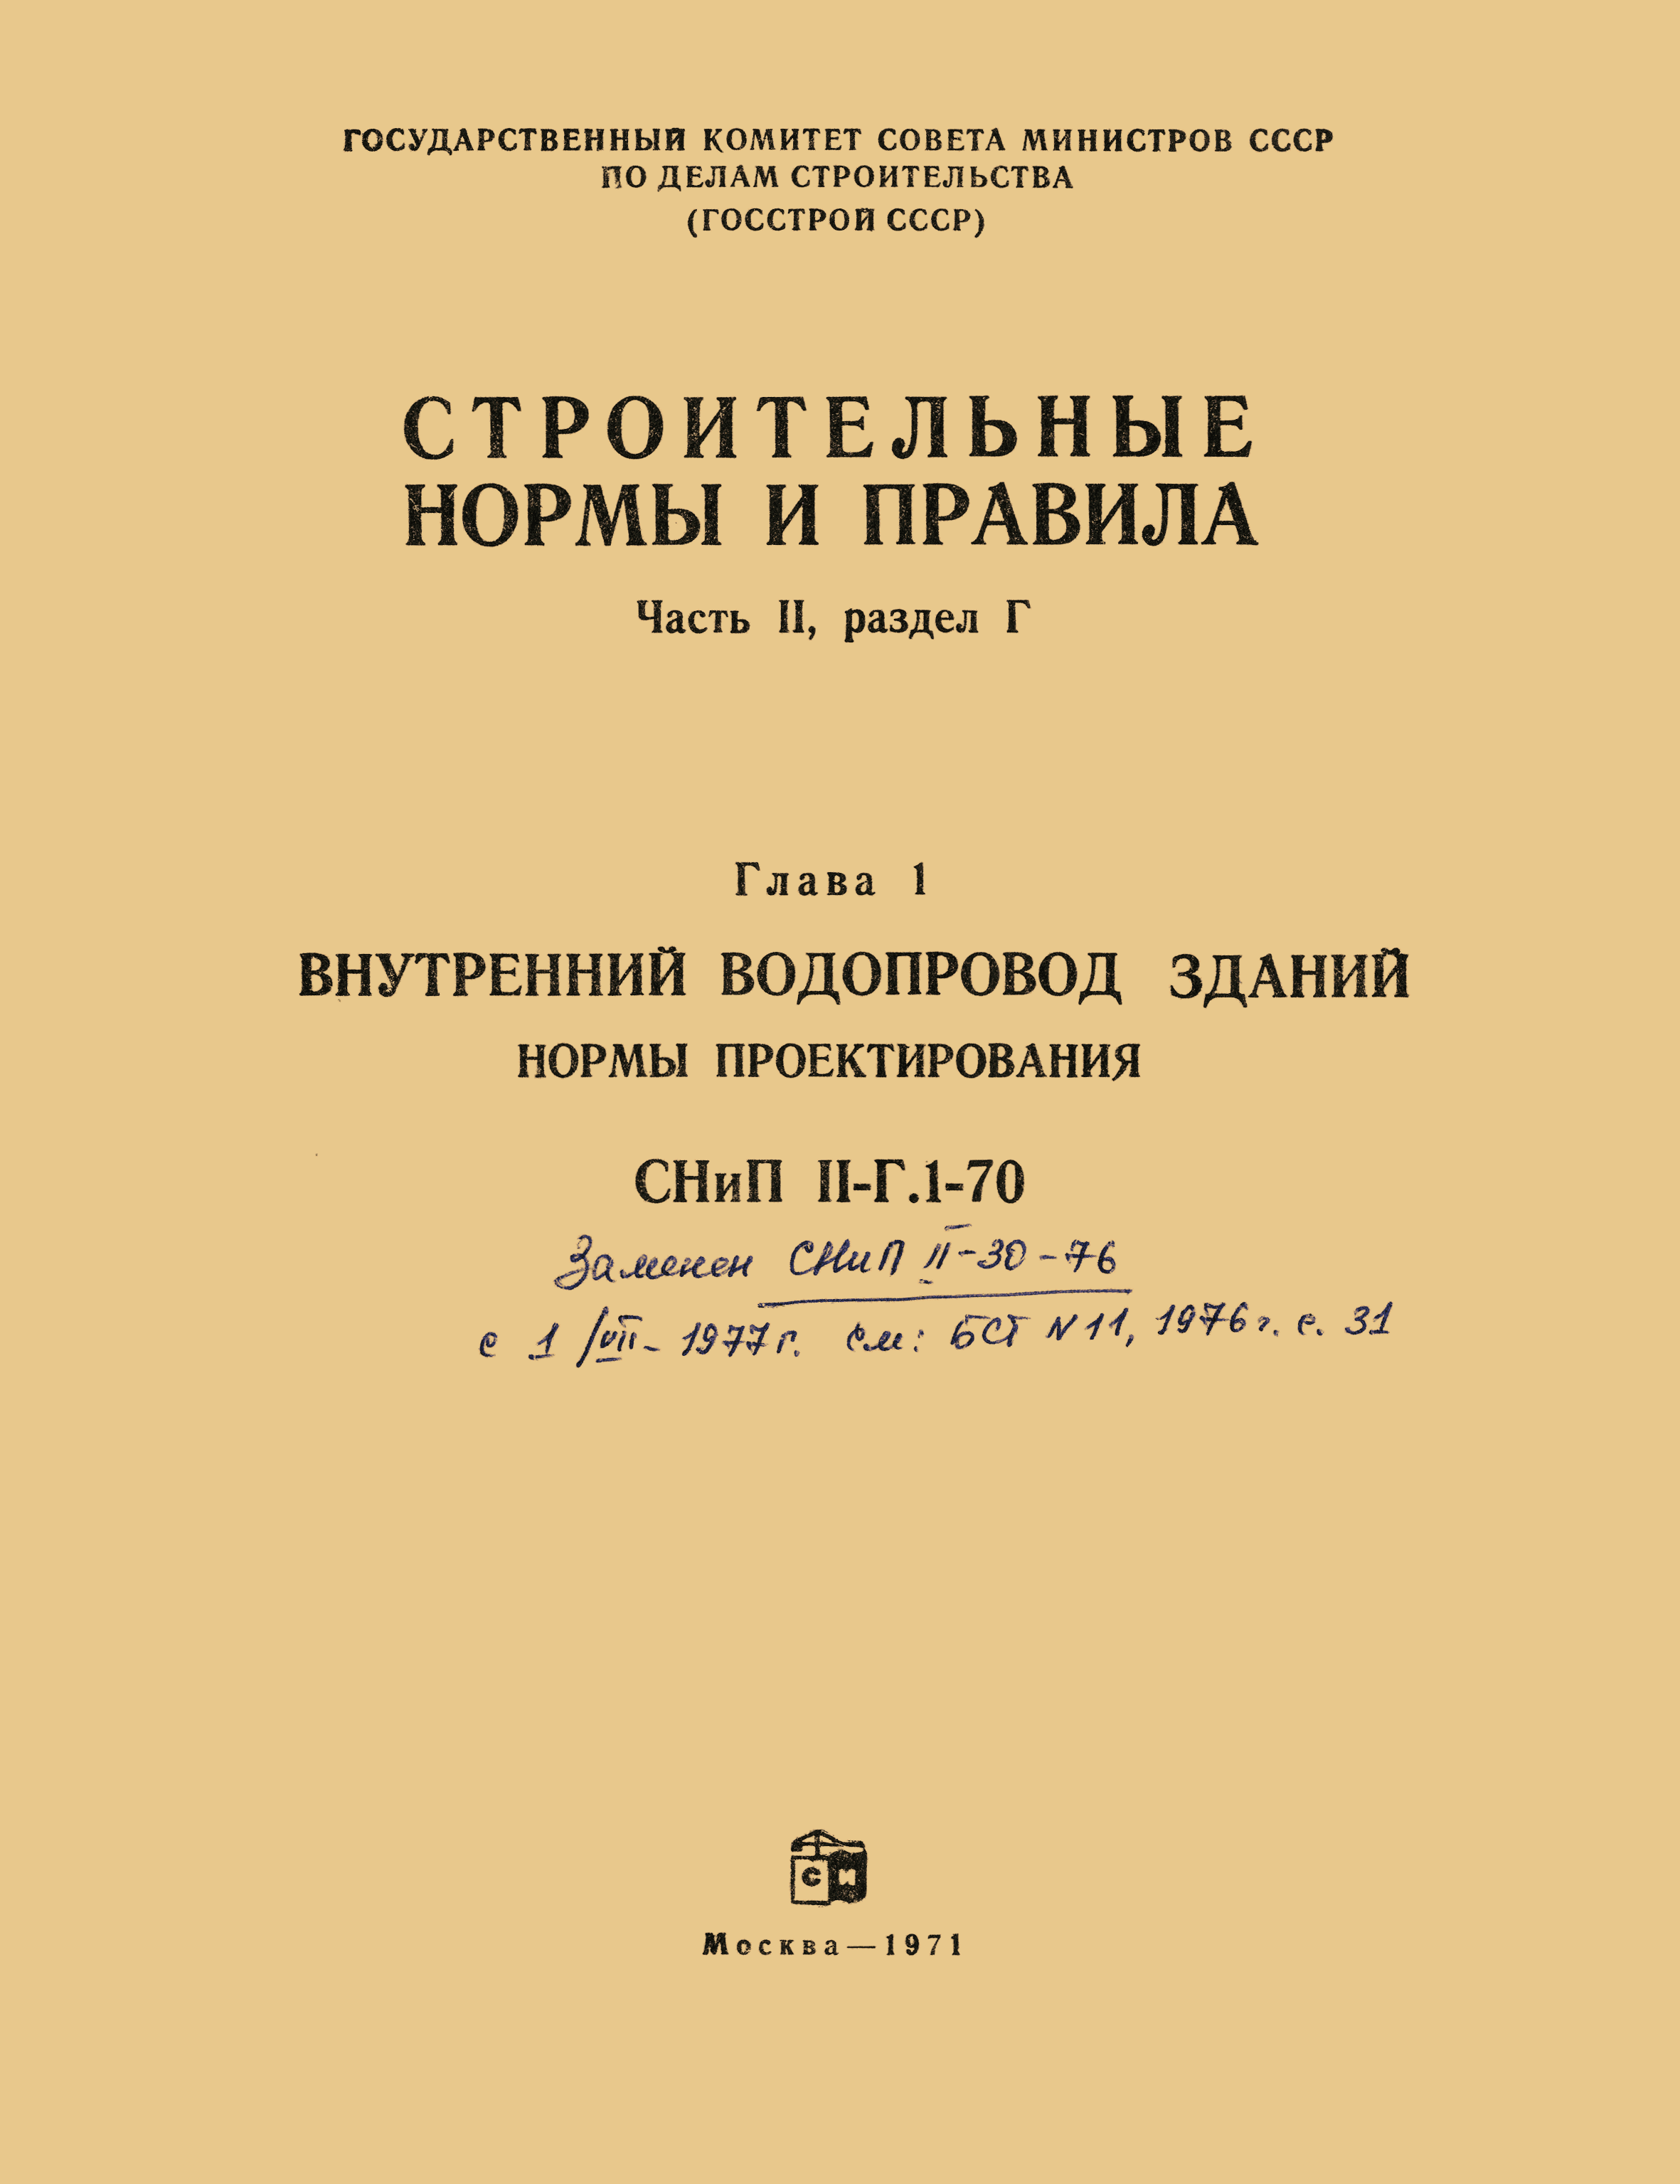 СНиП II-Г.1-70